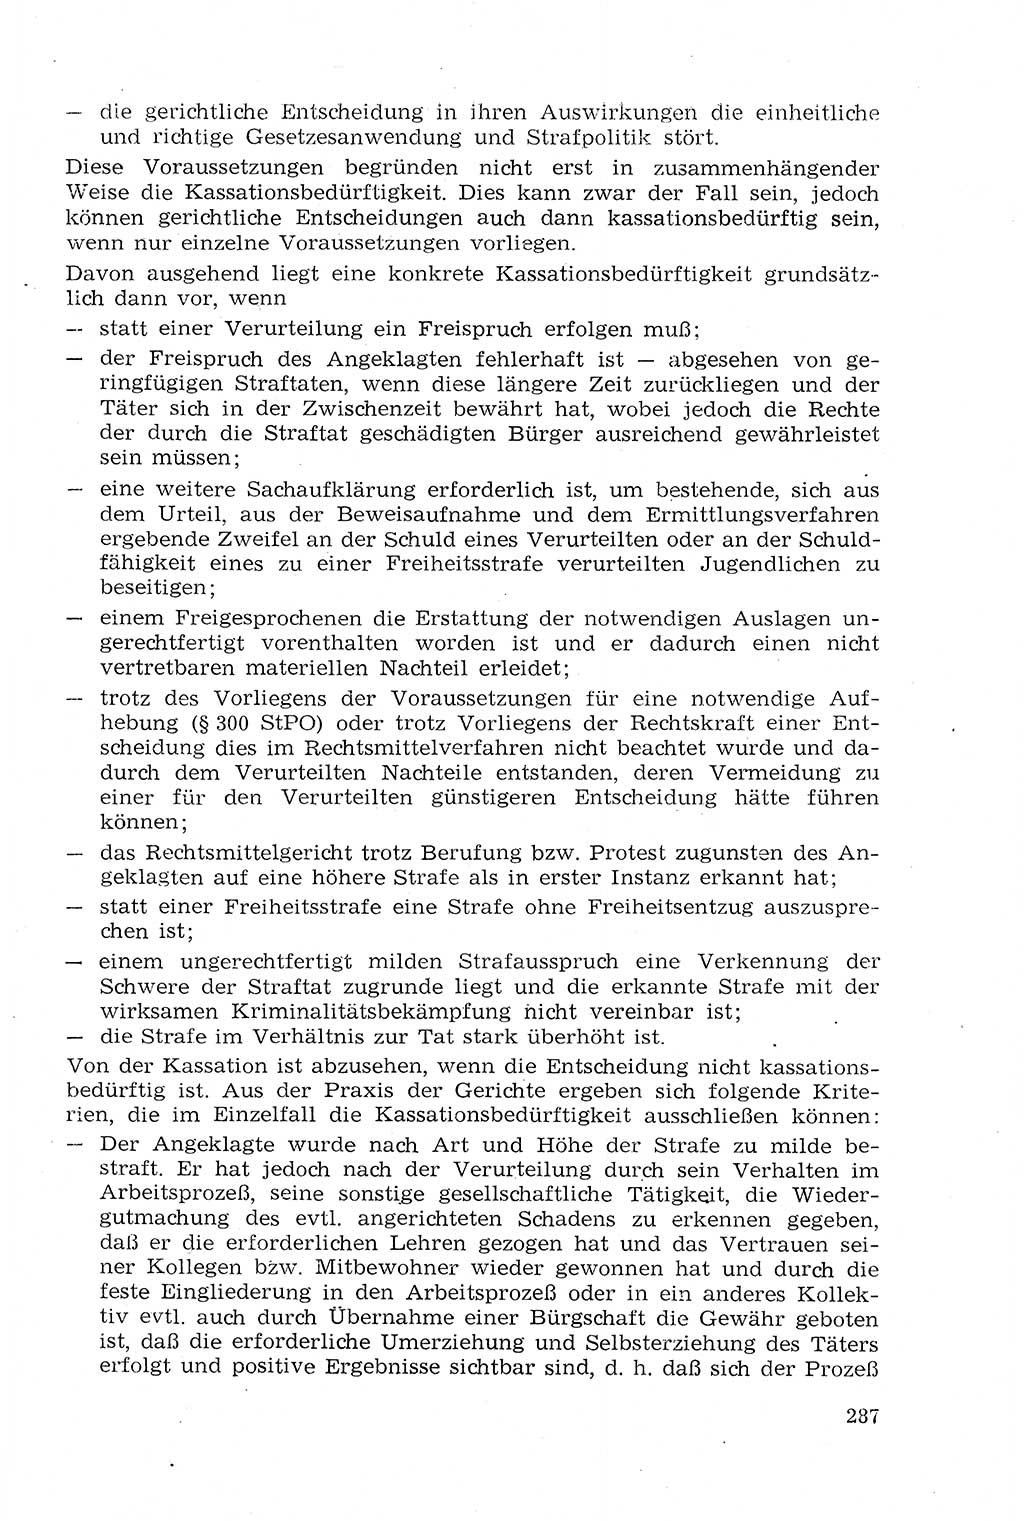 Strafprozeßrecht der DDR (Deutsche Demokratische Republik), Lehrmaterial 1969, Seite 287 (Strafprozeßr. DDR Lehrmat. 1969, S. 287)